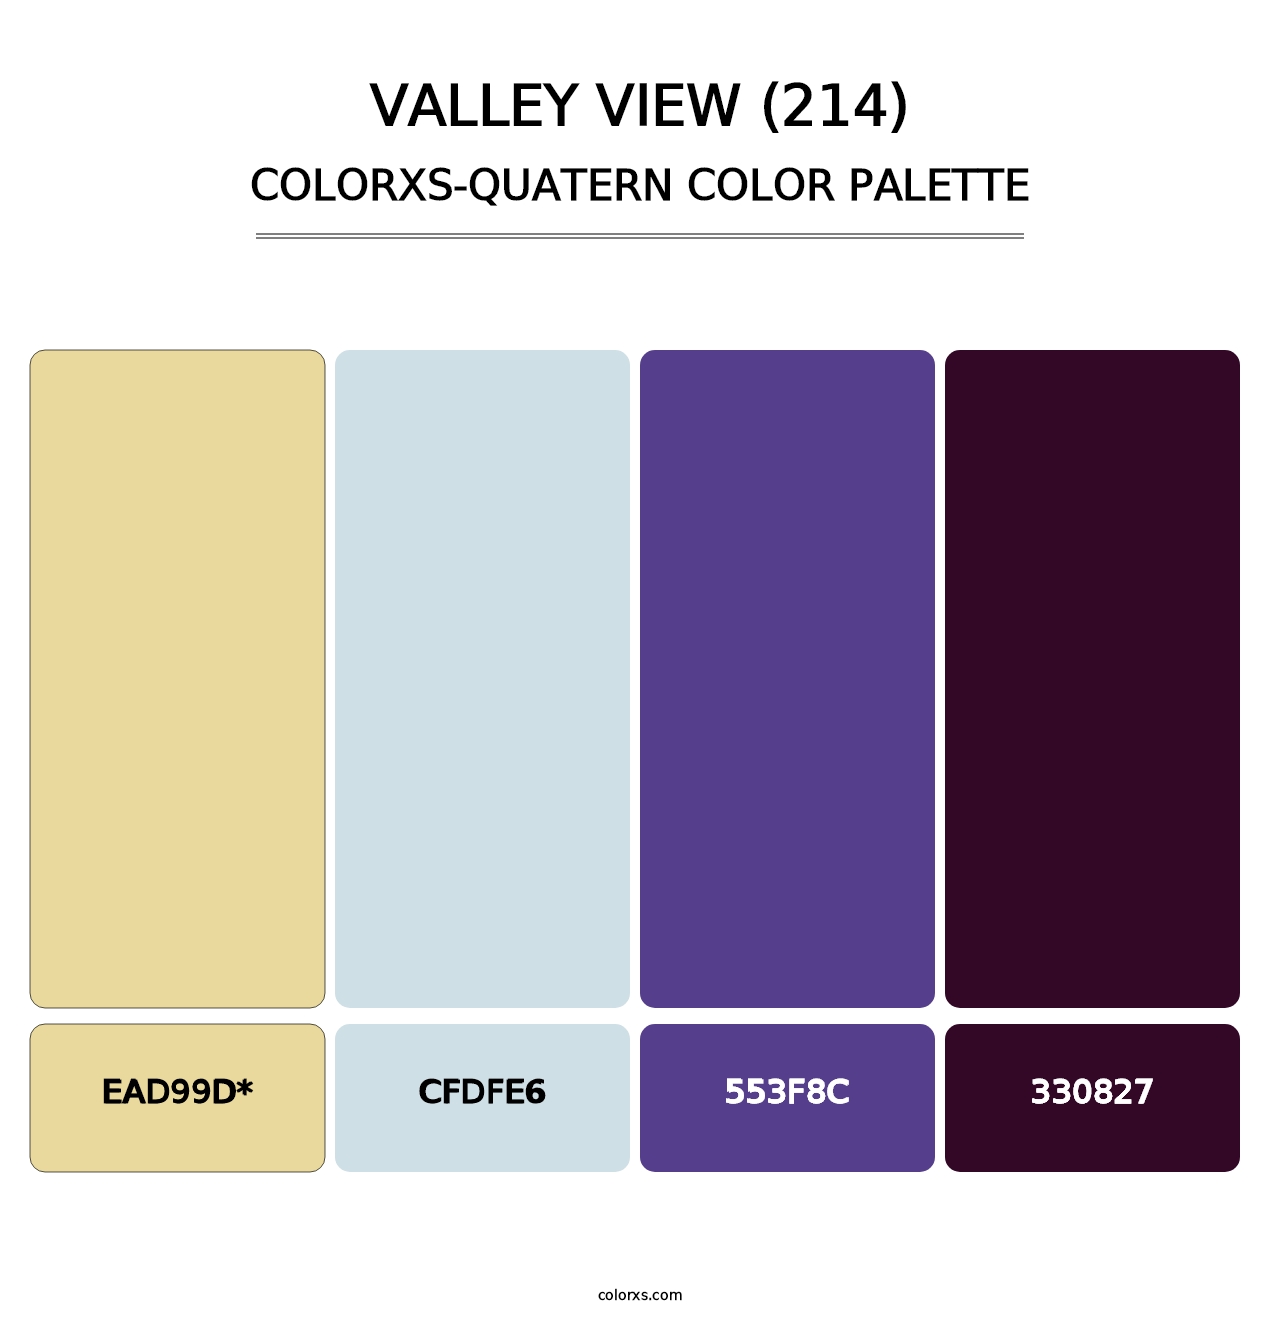 Valley View (214) - Colorxs Quad Palette